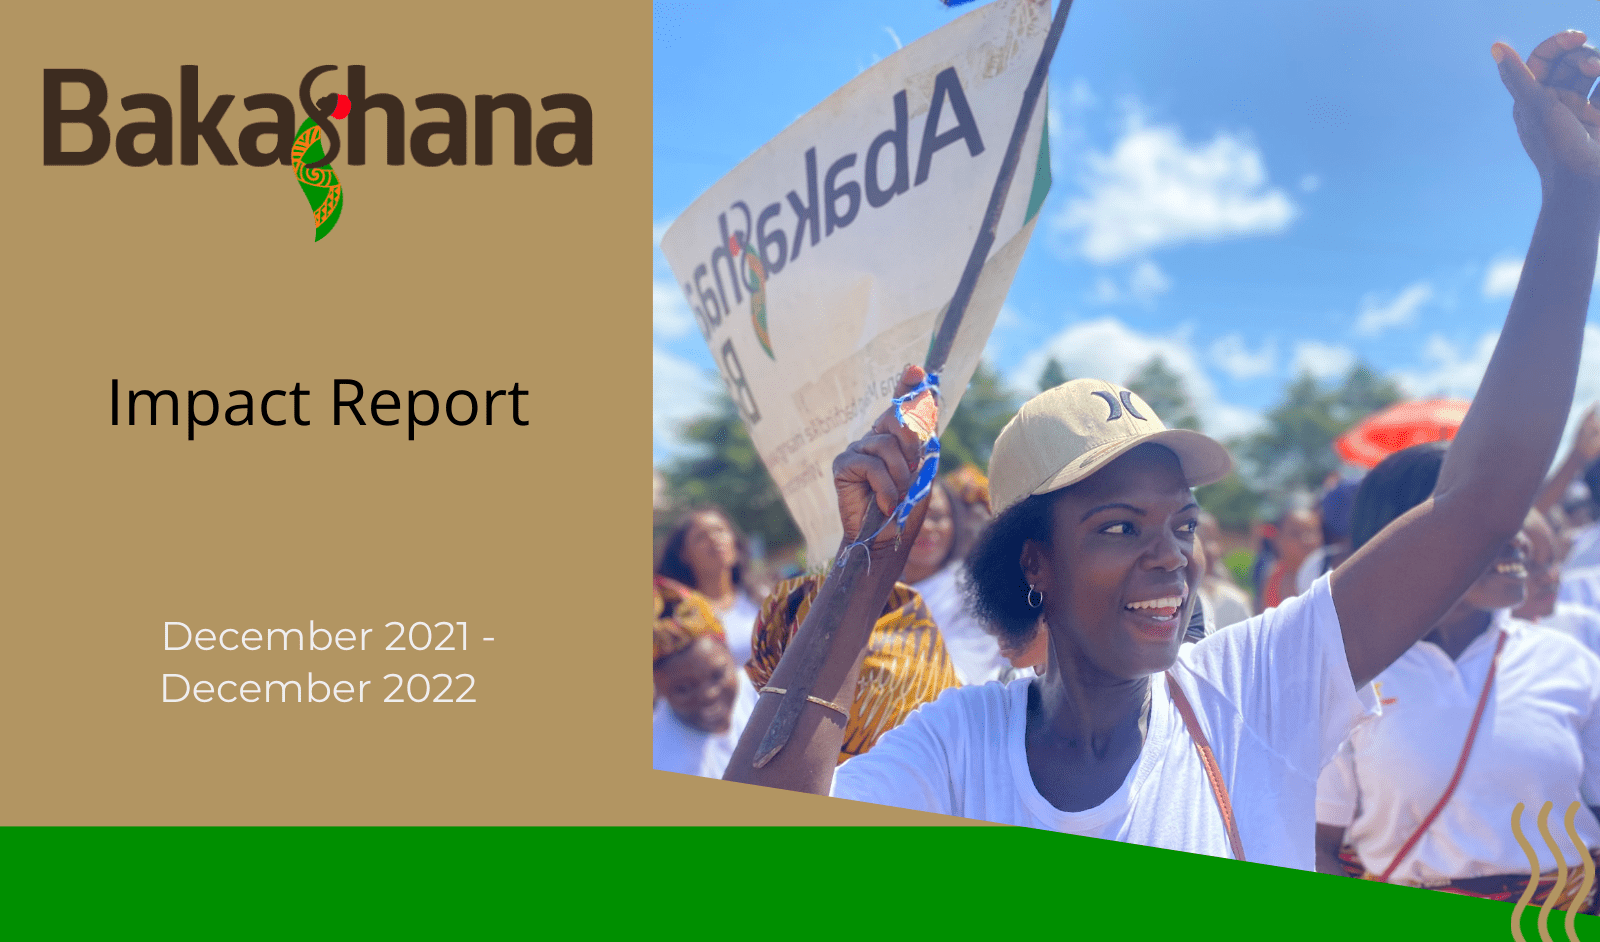 Bakashana's 2022 impact report